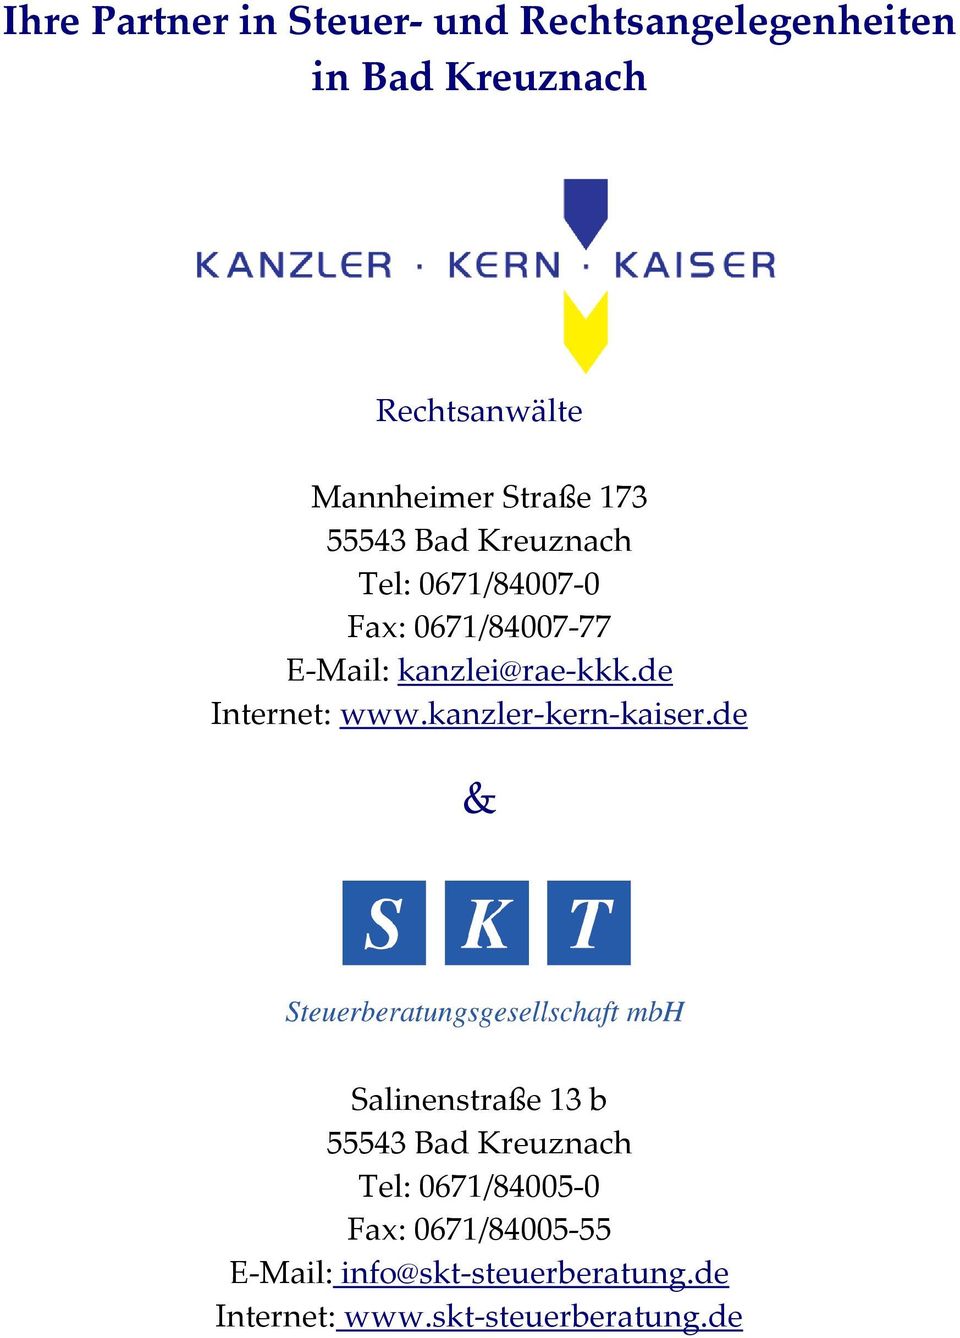 de Internet: www.kanzler-kern-kaiser.